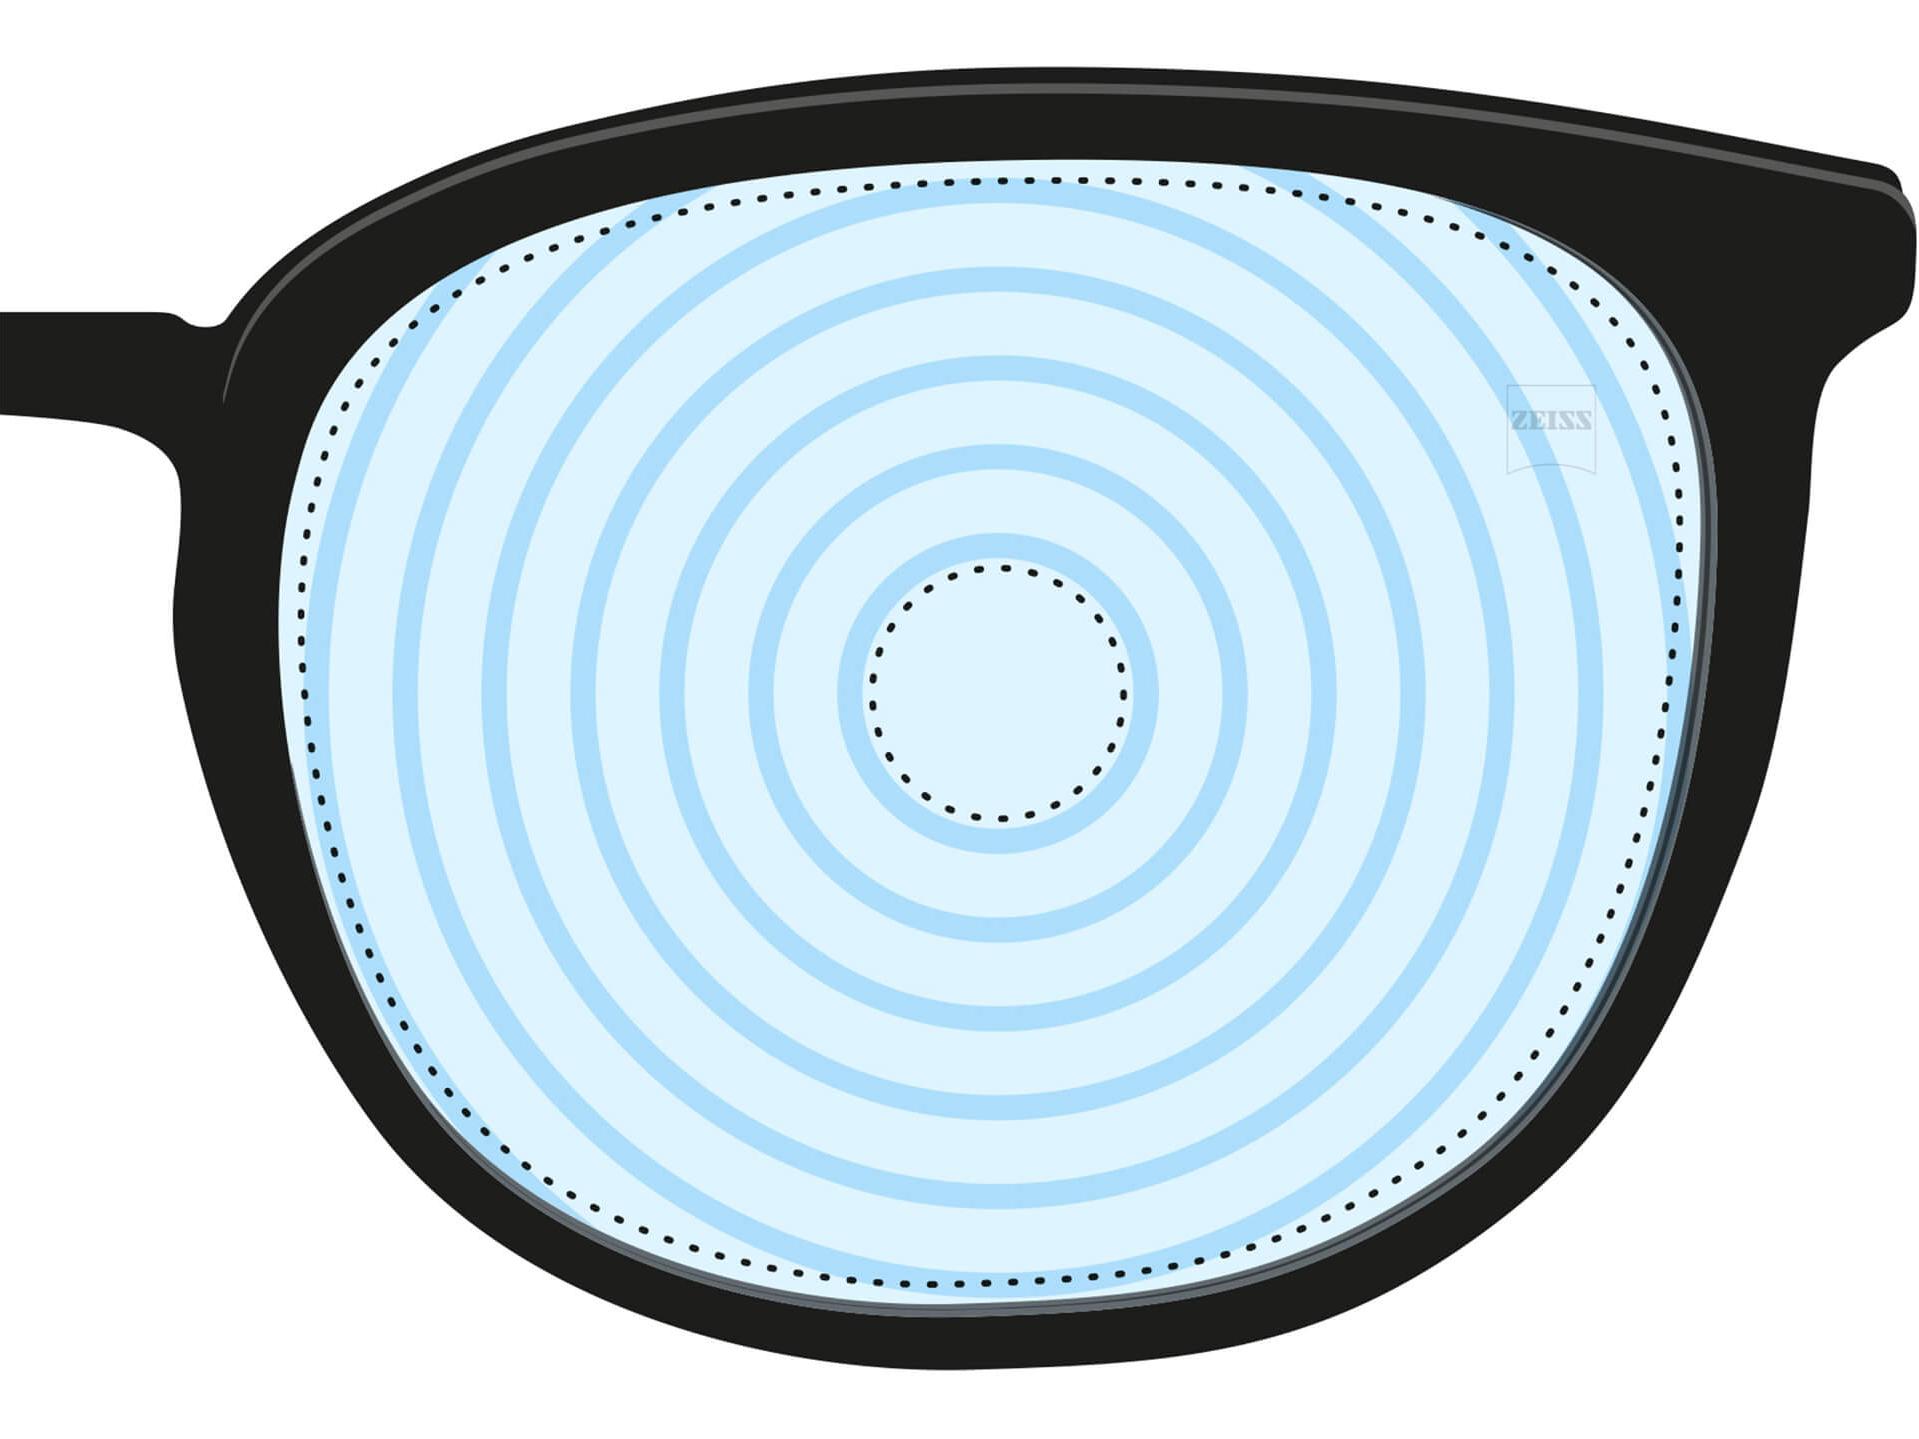 近視管理鏡片的圖片 鏡片上有代表不同鏡片度數的同心圓環。這是特殊用途的一種鏡片設計範例。